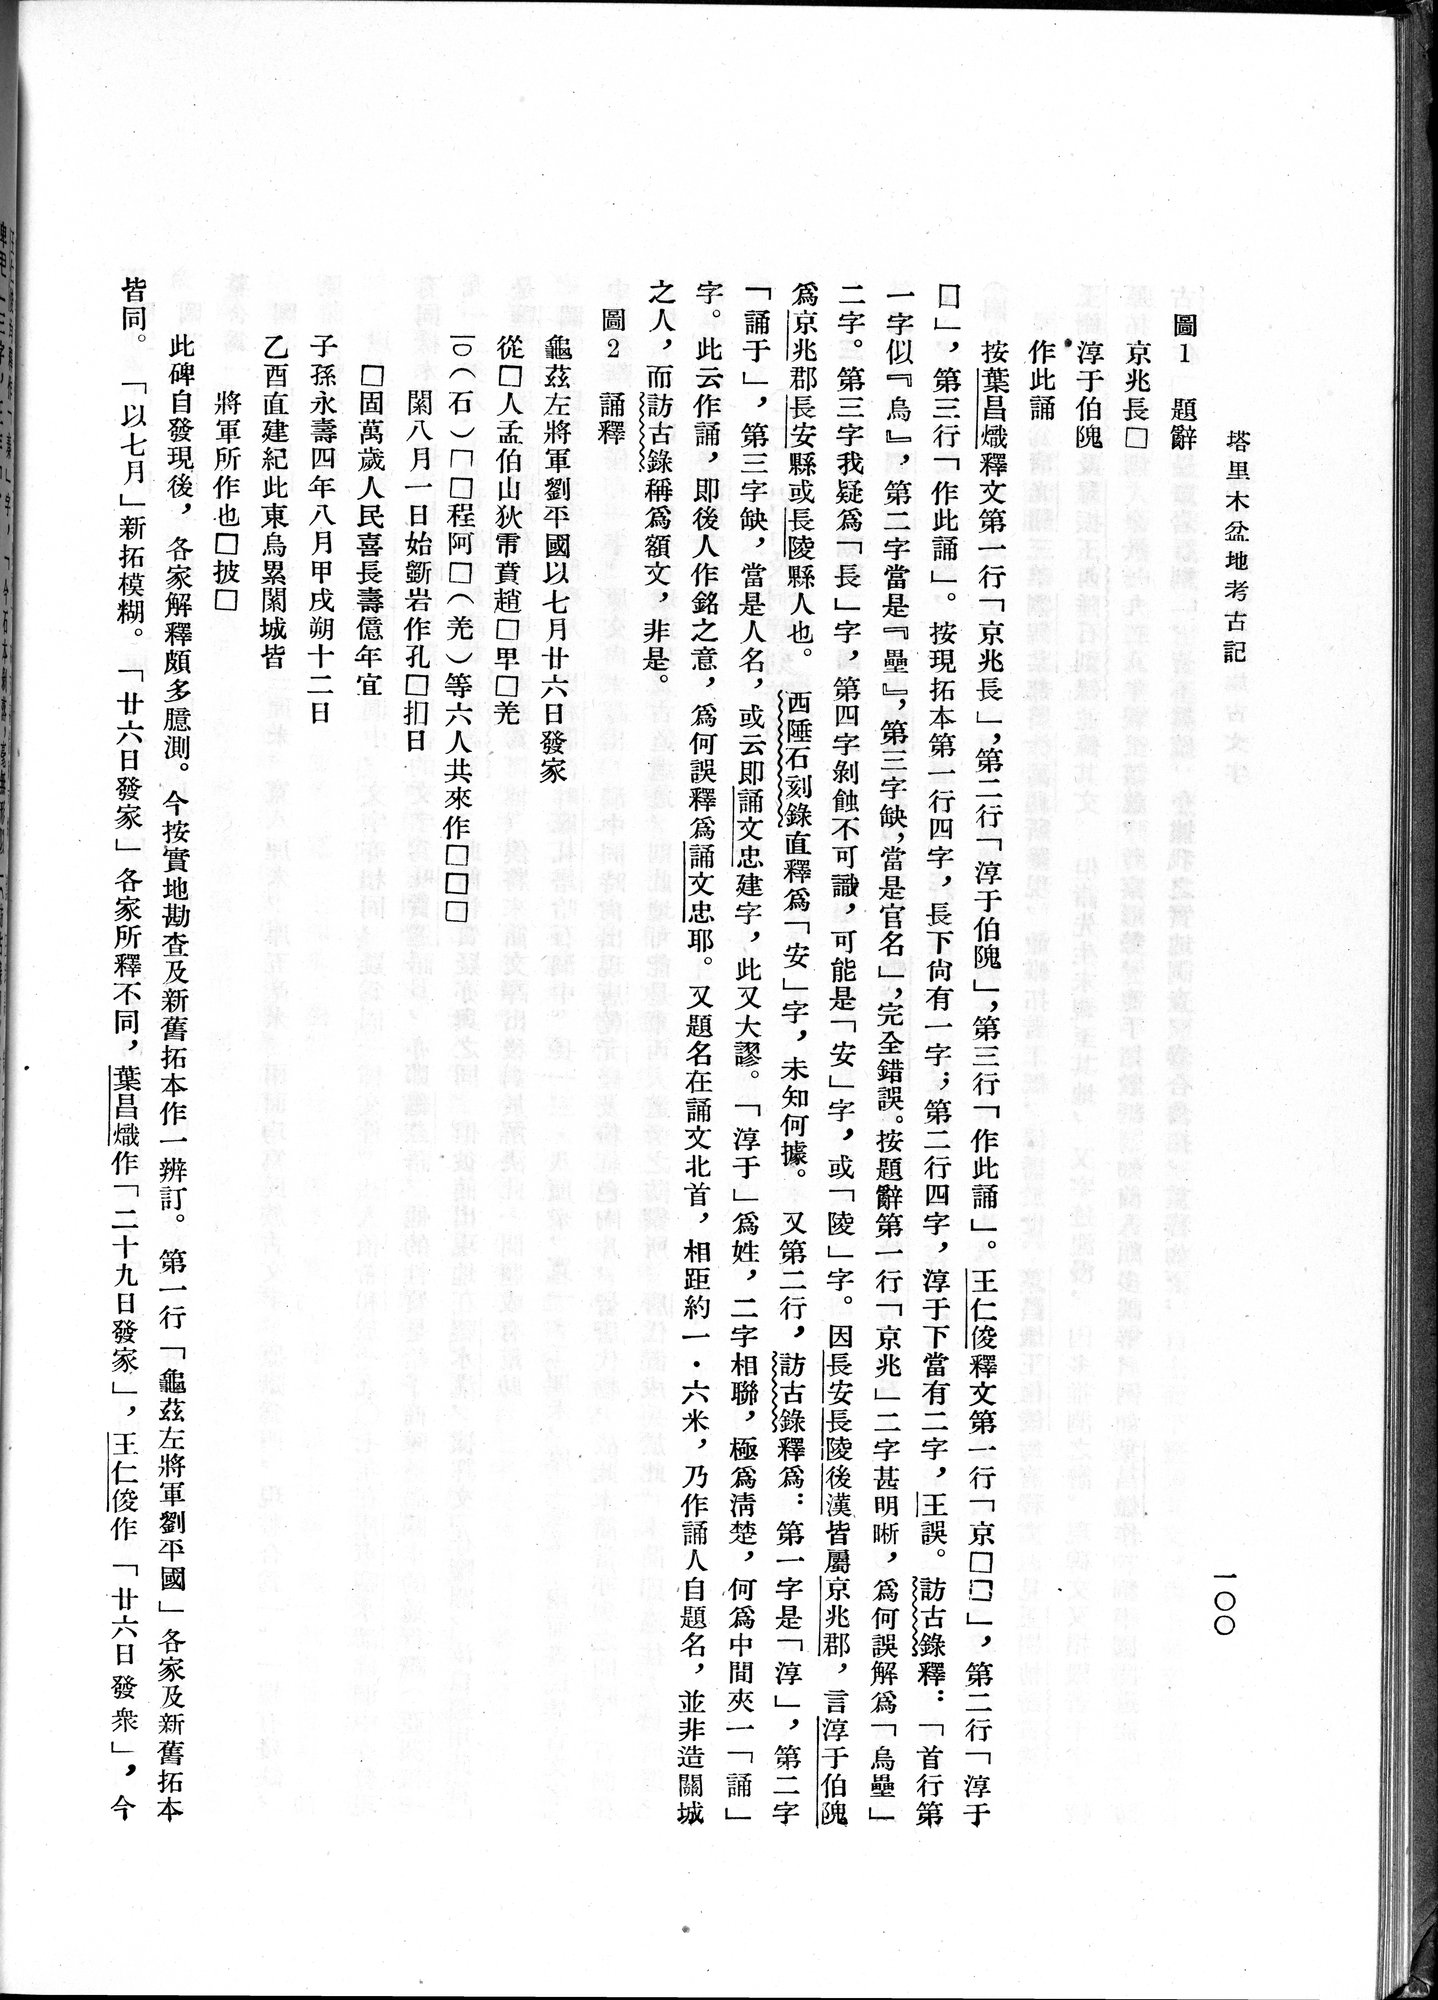 塔里木盆地考古記 : vol.1 / 164 ページ（白黒高解像度画像）